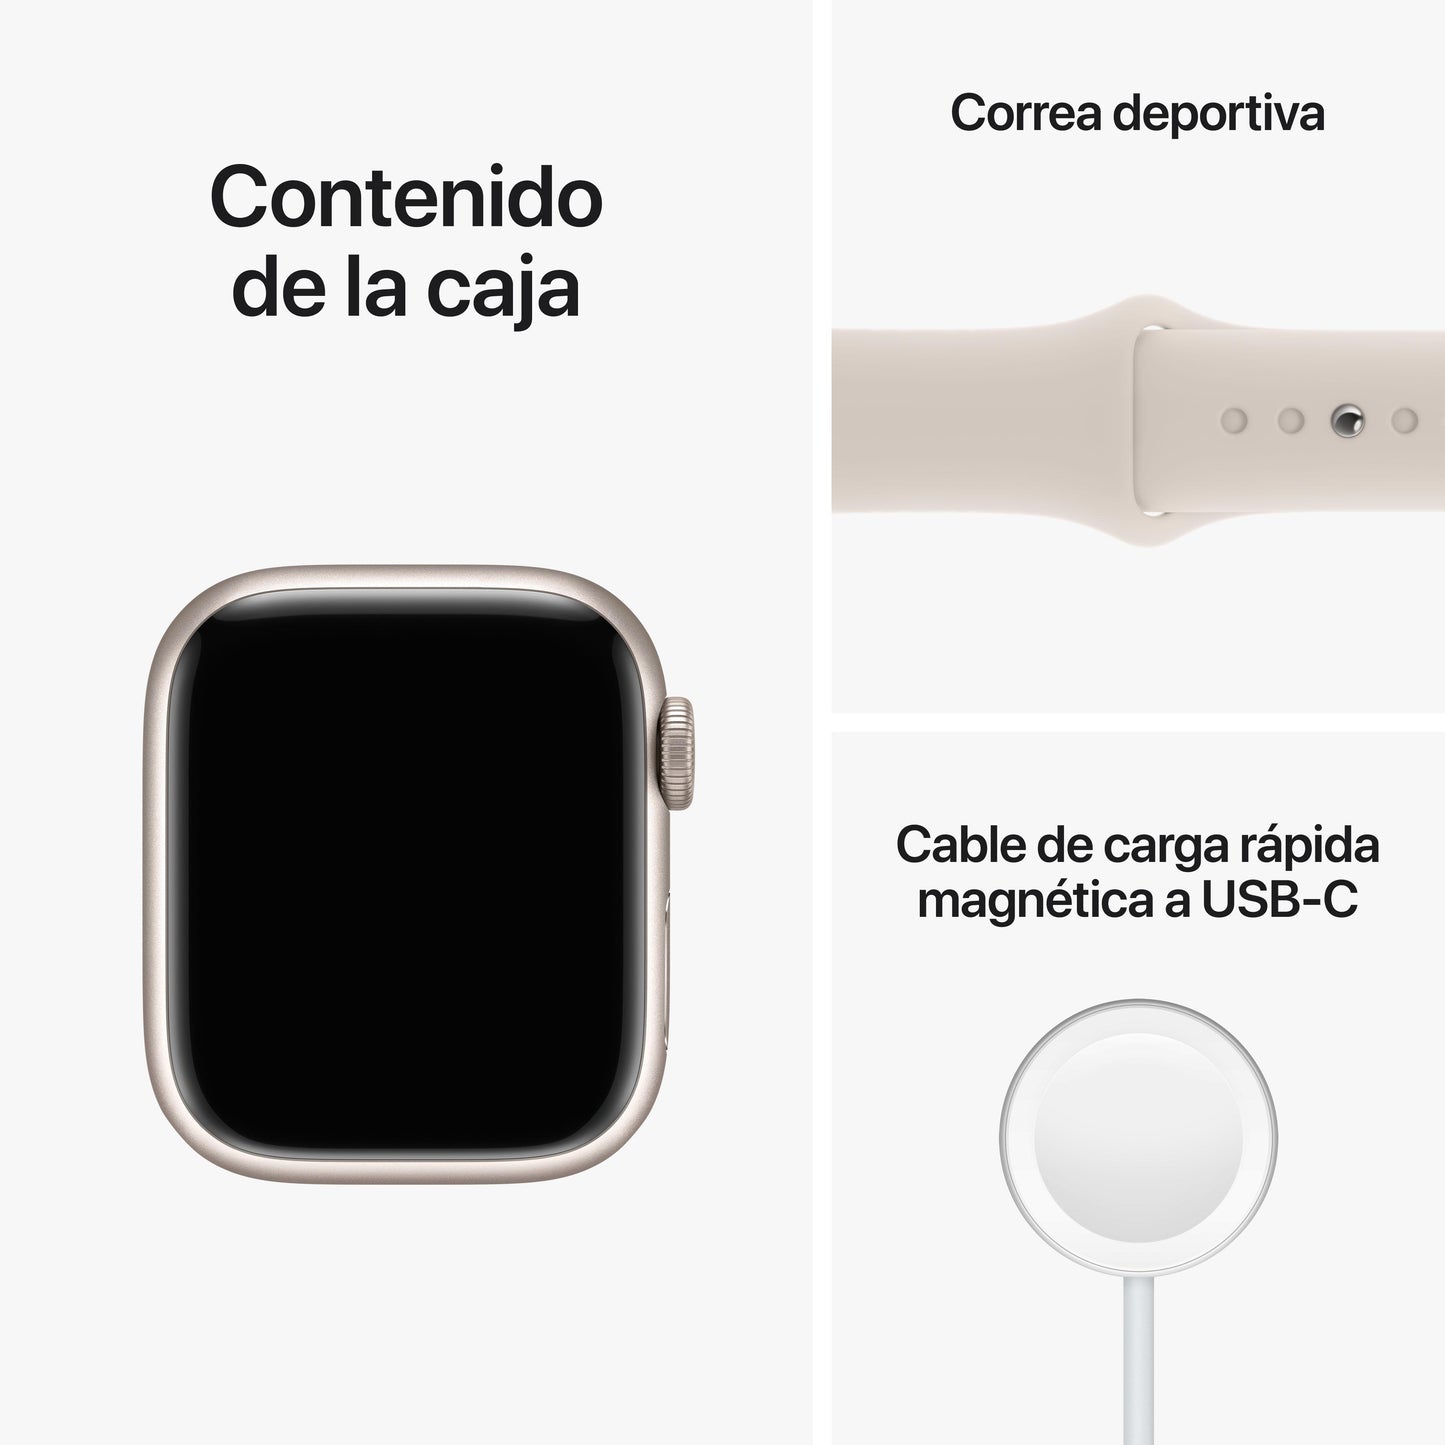 Apple Watch Series 8 (GPS + Cellular) - Caja de aluminio en blanco estrella de 41 mm - Correa deportiva blanco estrella - Talla única